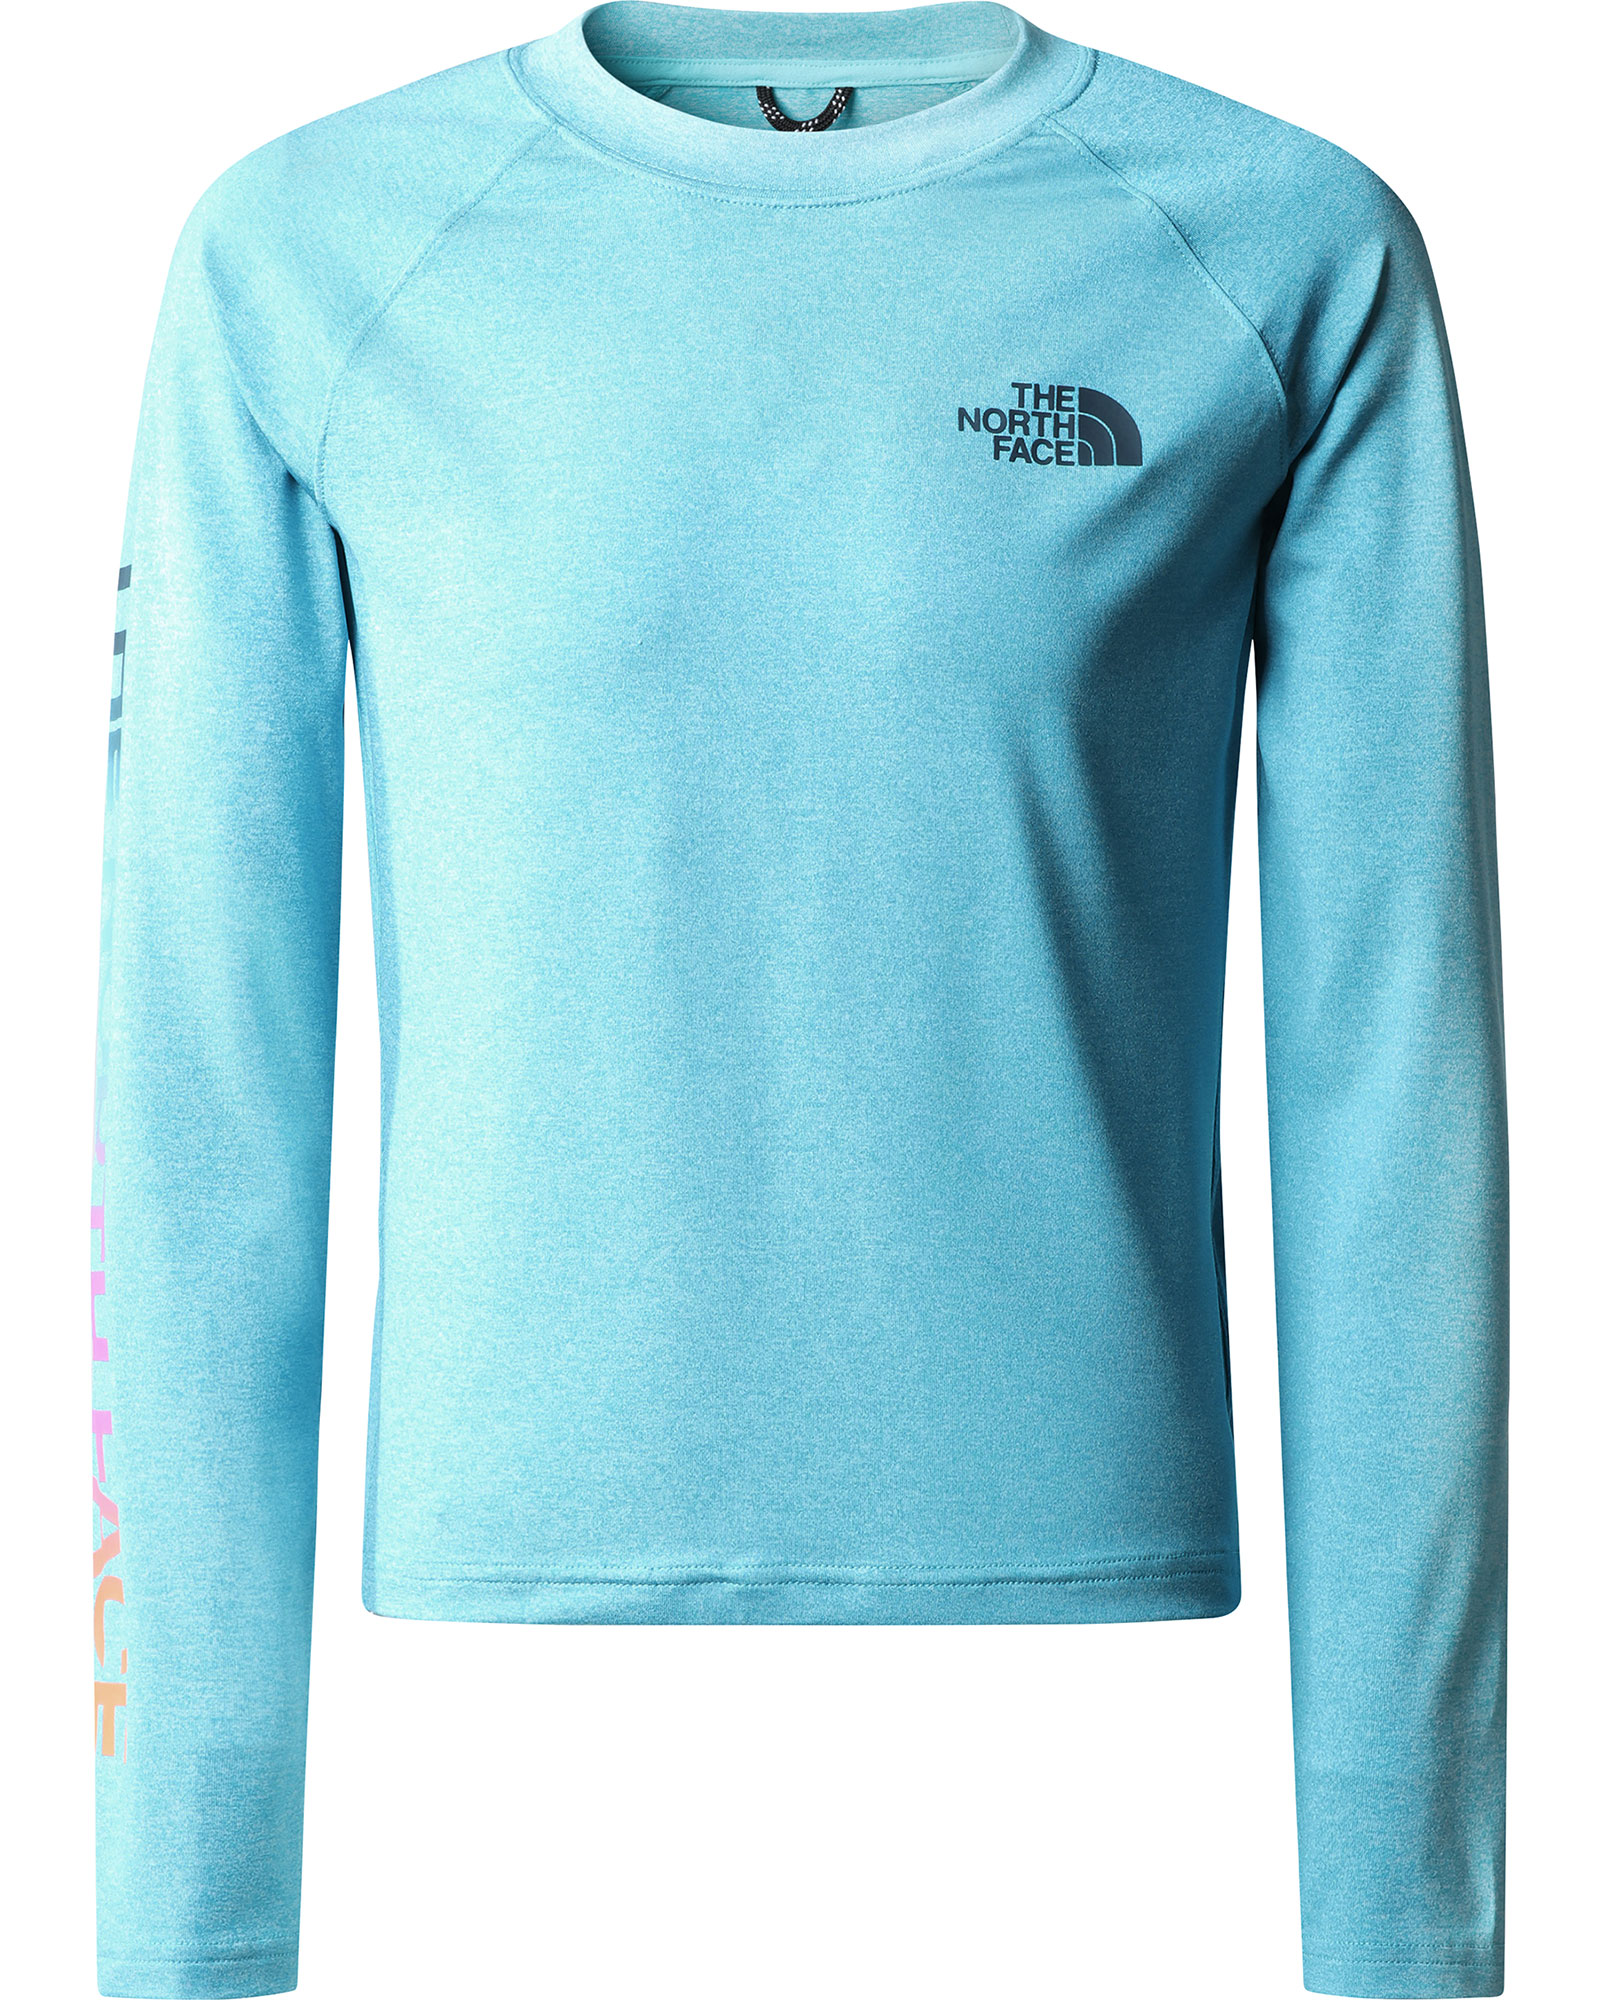 The North Face Girl’s Amphibious Long Sleeved Sun T Shirt XL - Scuba Blue XL